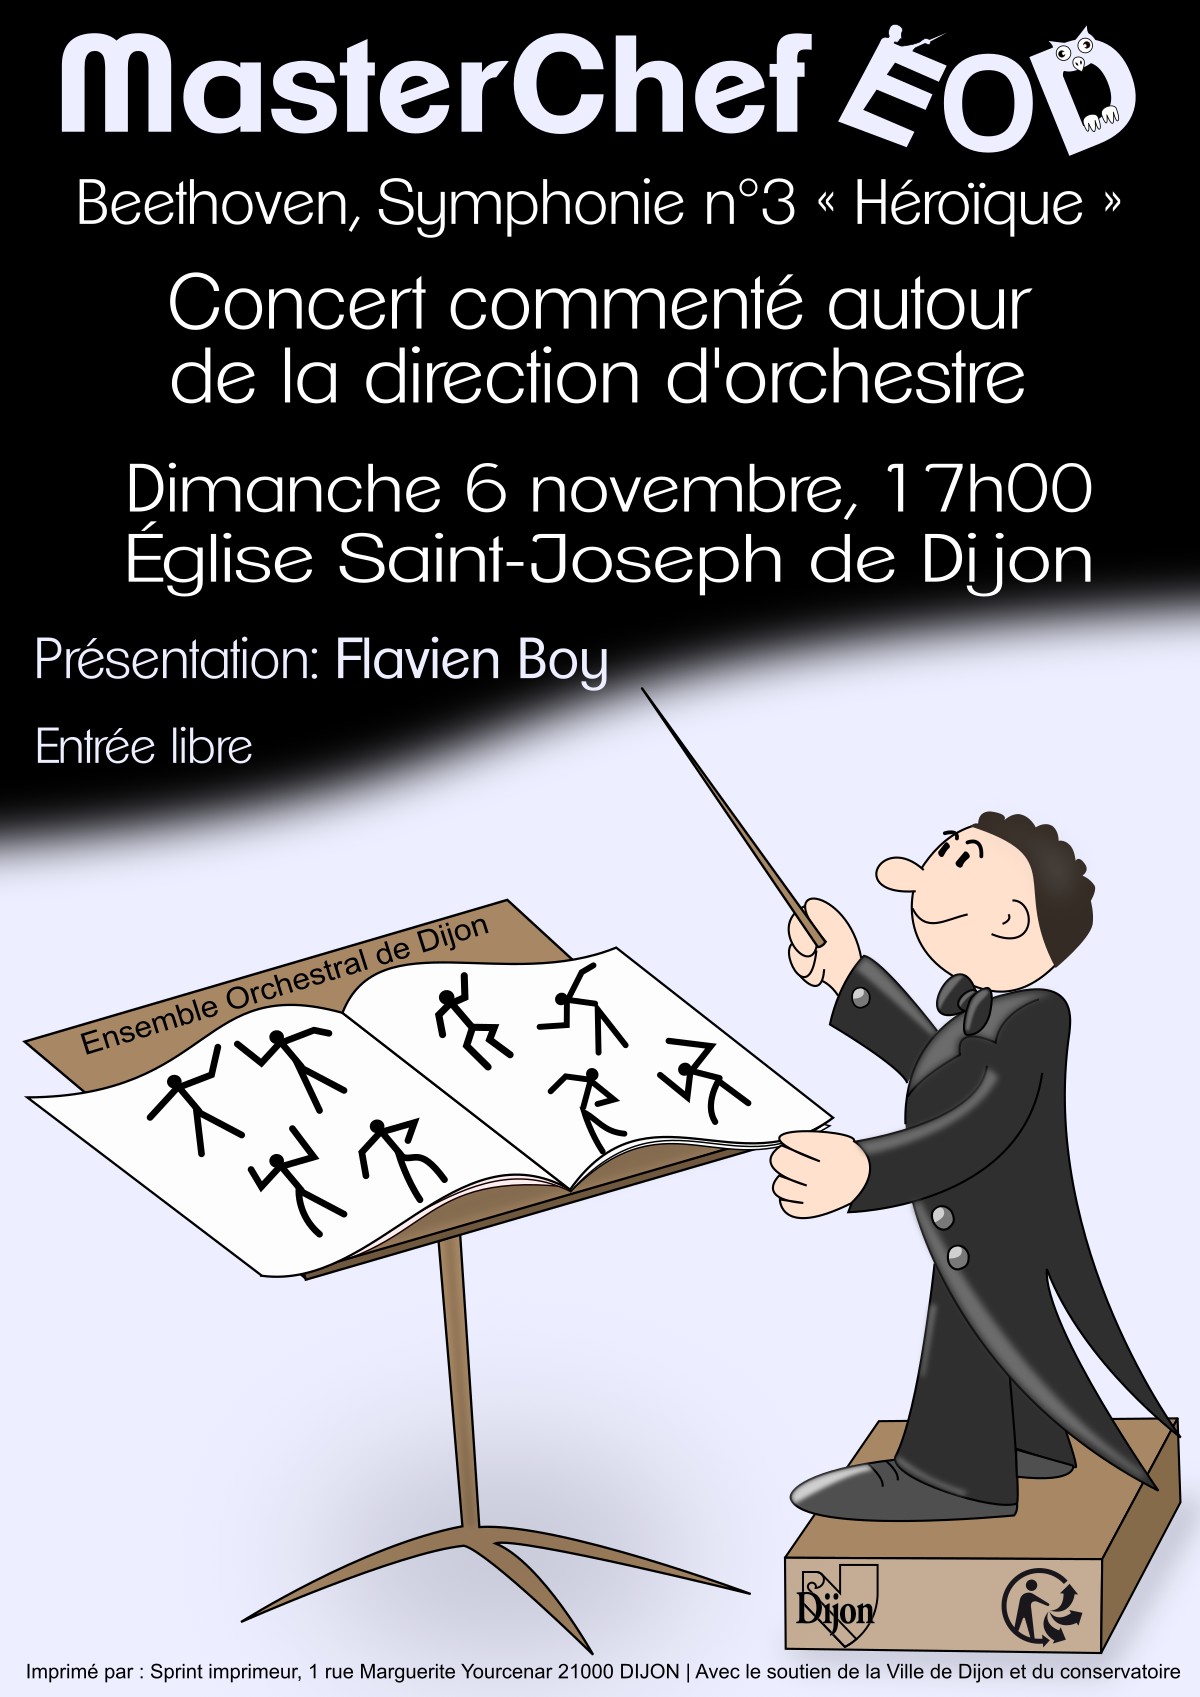 Dimanche 6 novembre, 17h00 : Concert commenté autour de la direction d'orchestre